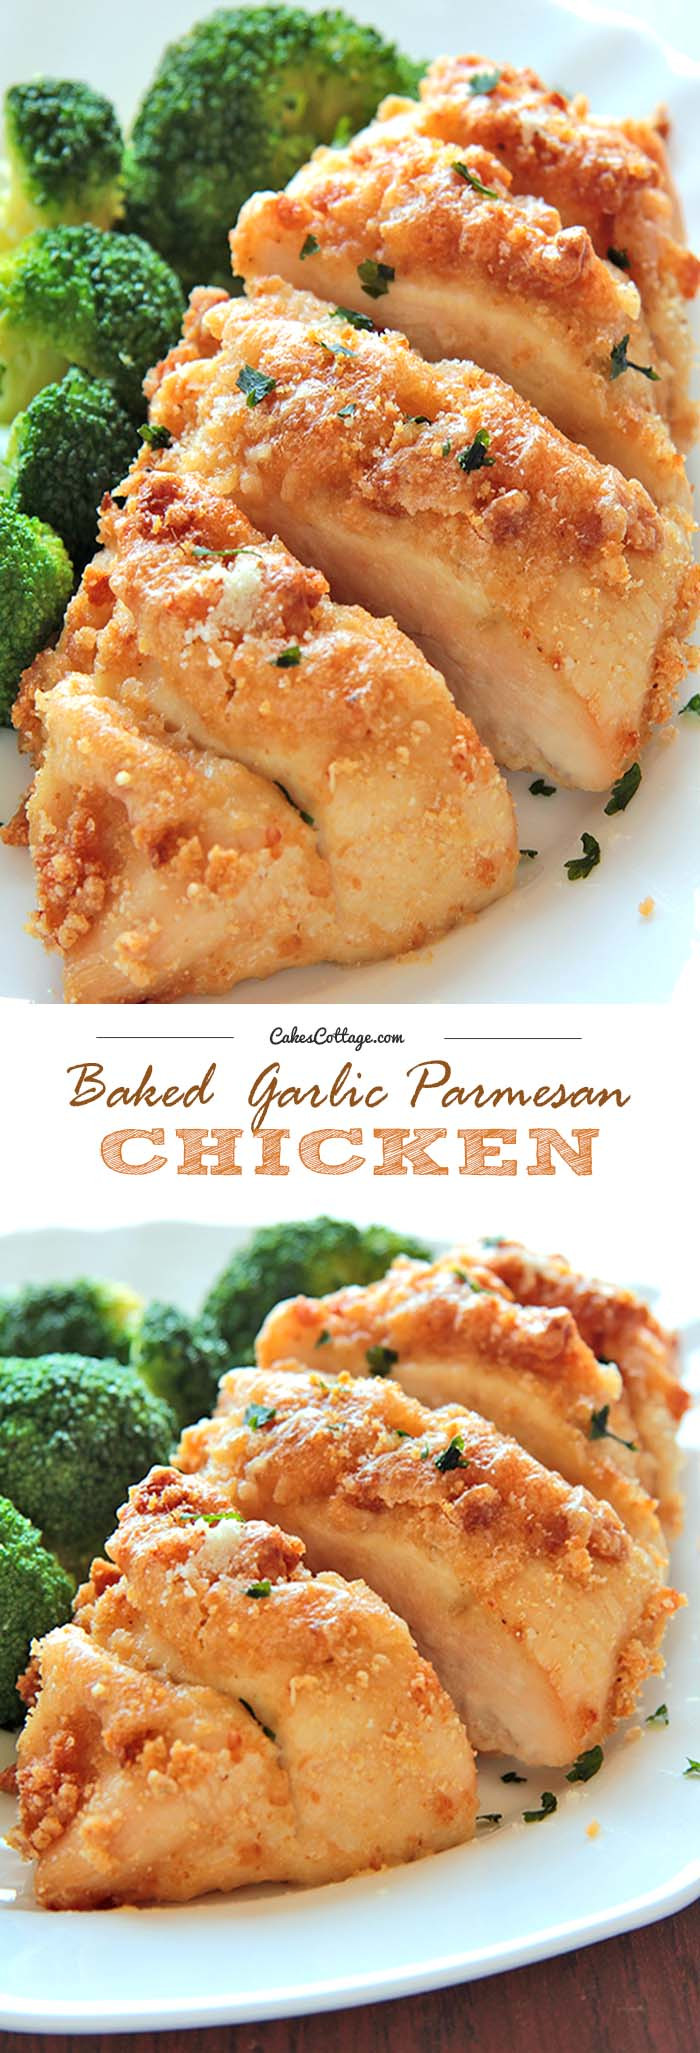 Baked Garlic Chicken Recipe
 Baked Garlic Parmesan Chicken Cakescottage